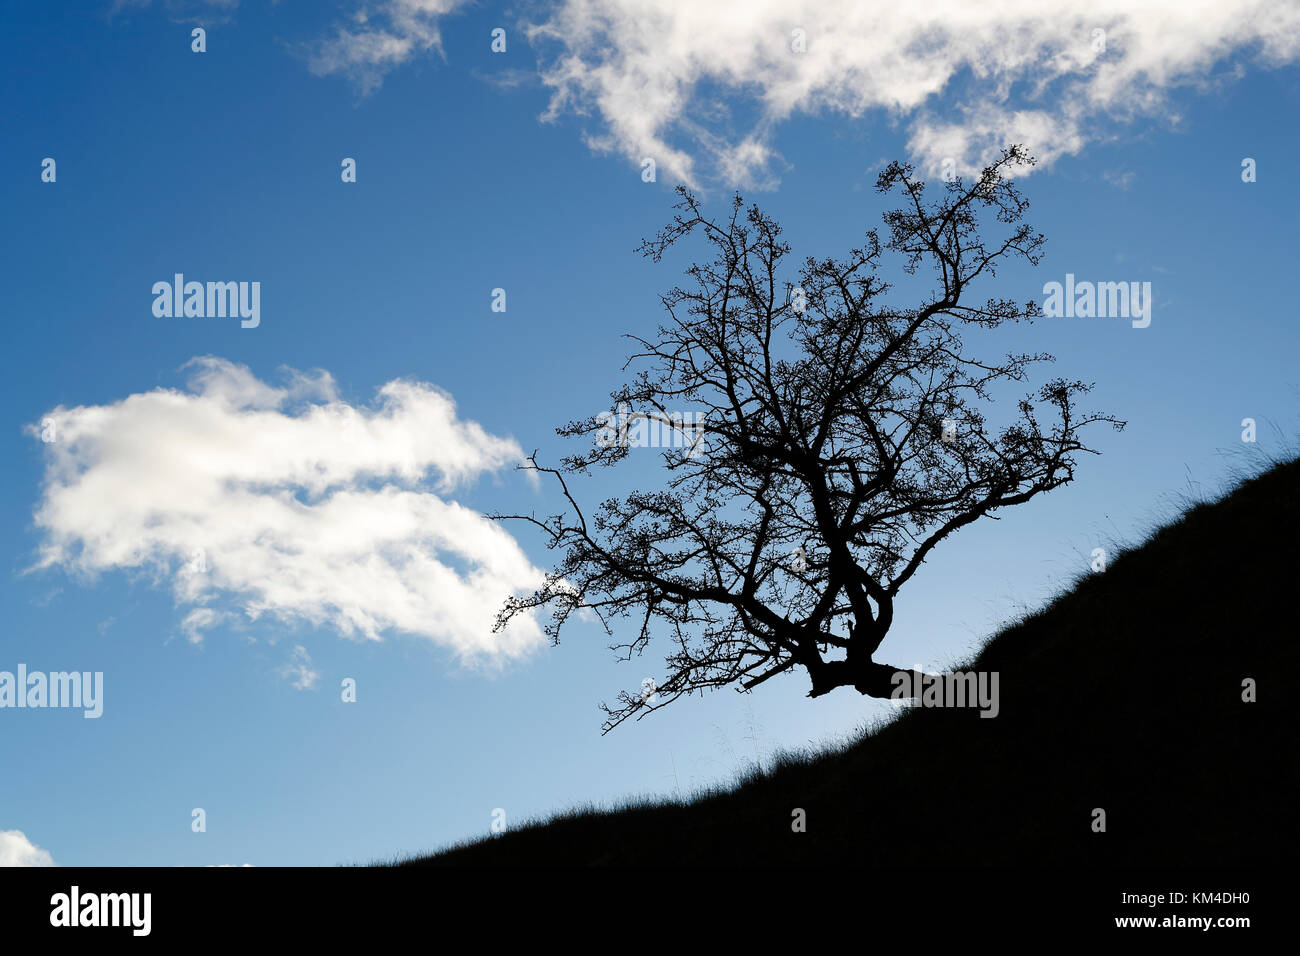 Weißdornbaum, Crataegus monogyna, auf einem Hügel, der eine dramatische Silhouette erzeugt, der anfängliche Effekt ist auf die Belichtung der Kamera für den helleren Hintergrund zurückzuführen Stockfoto